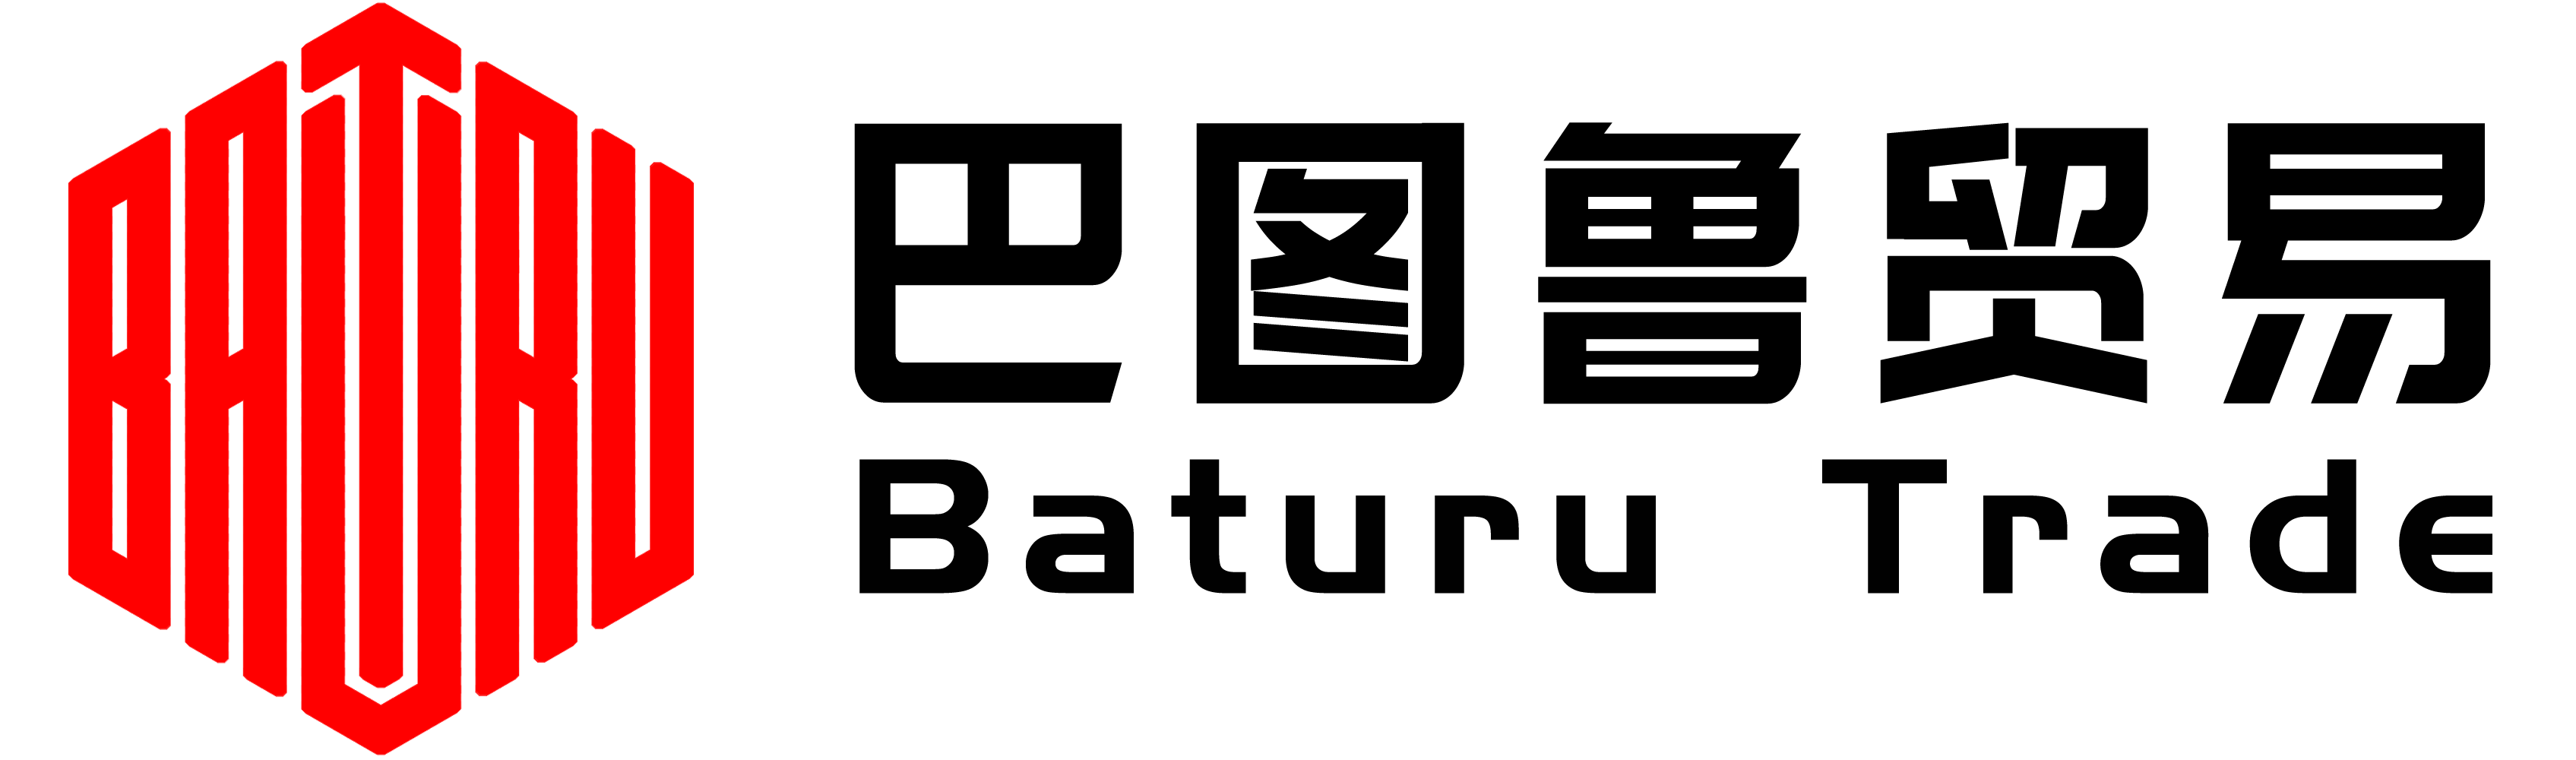 baturu logo